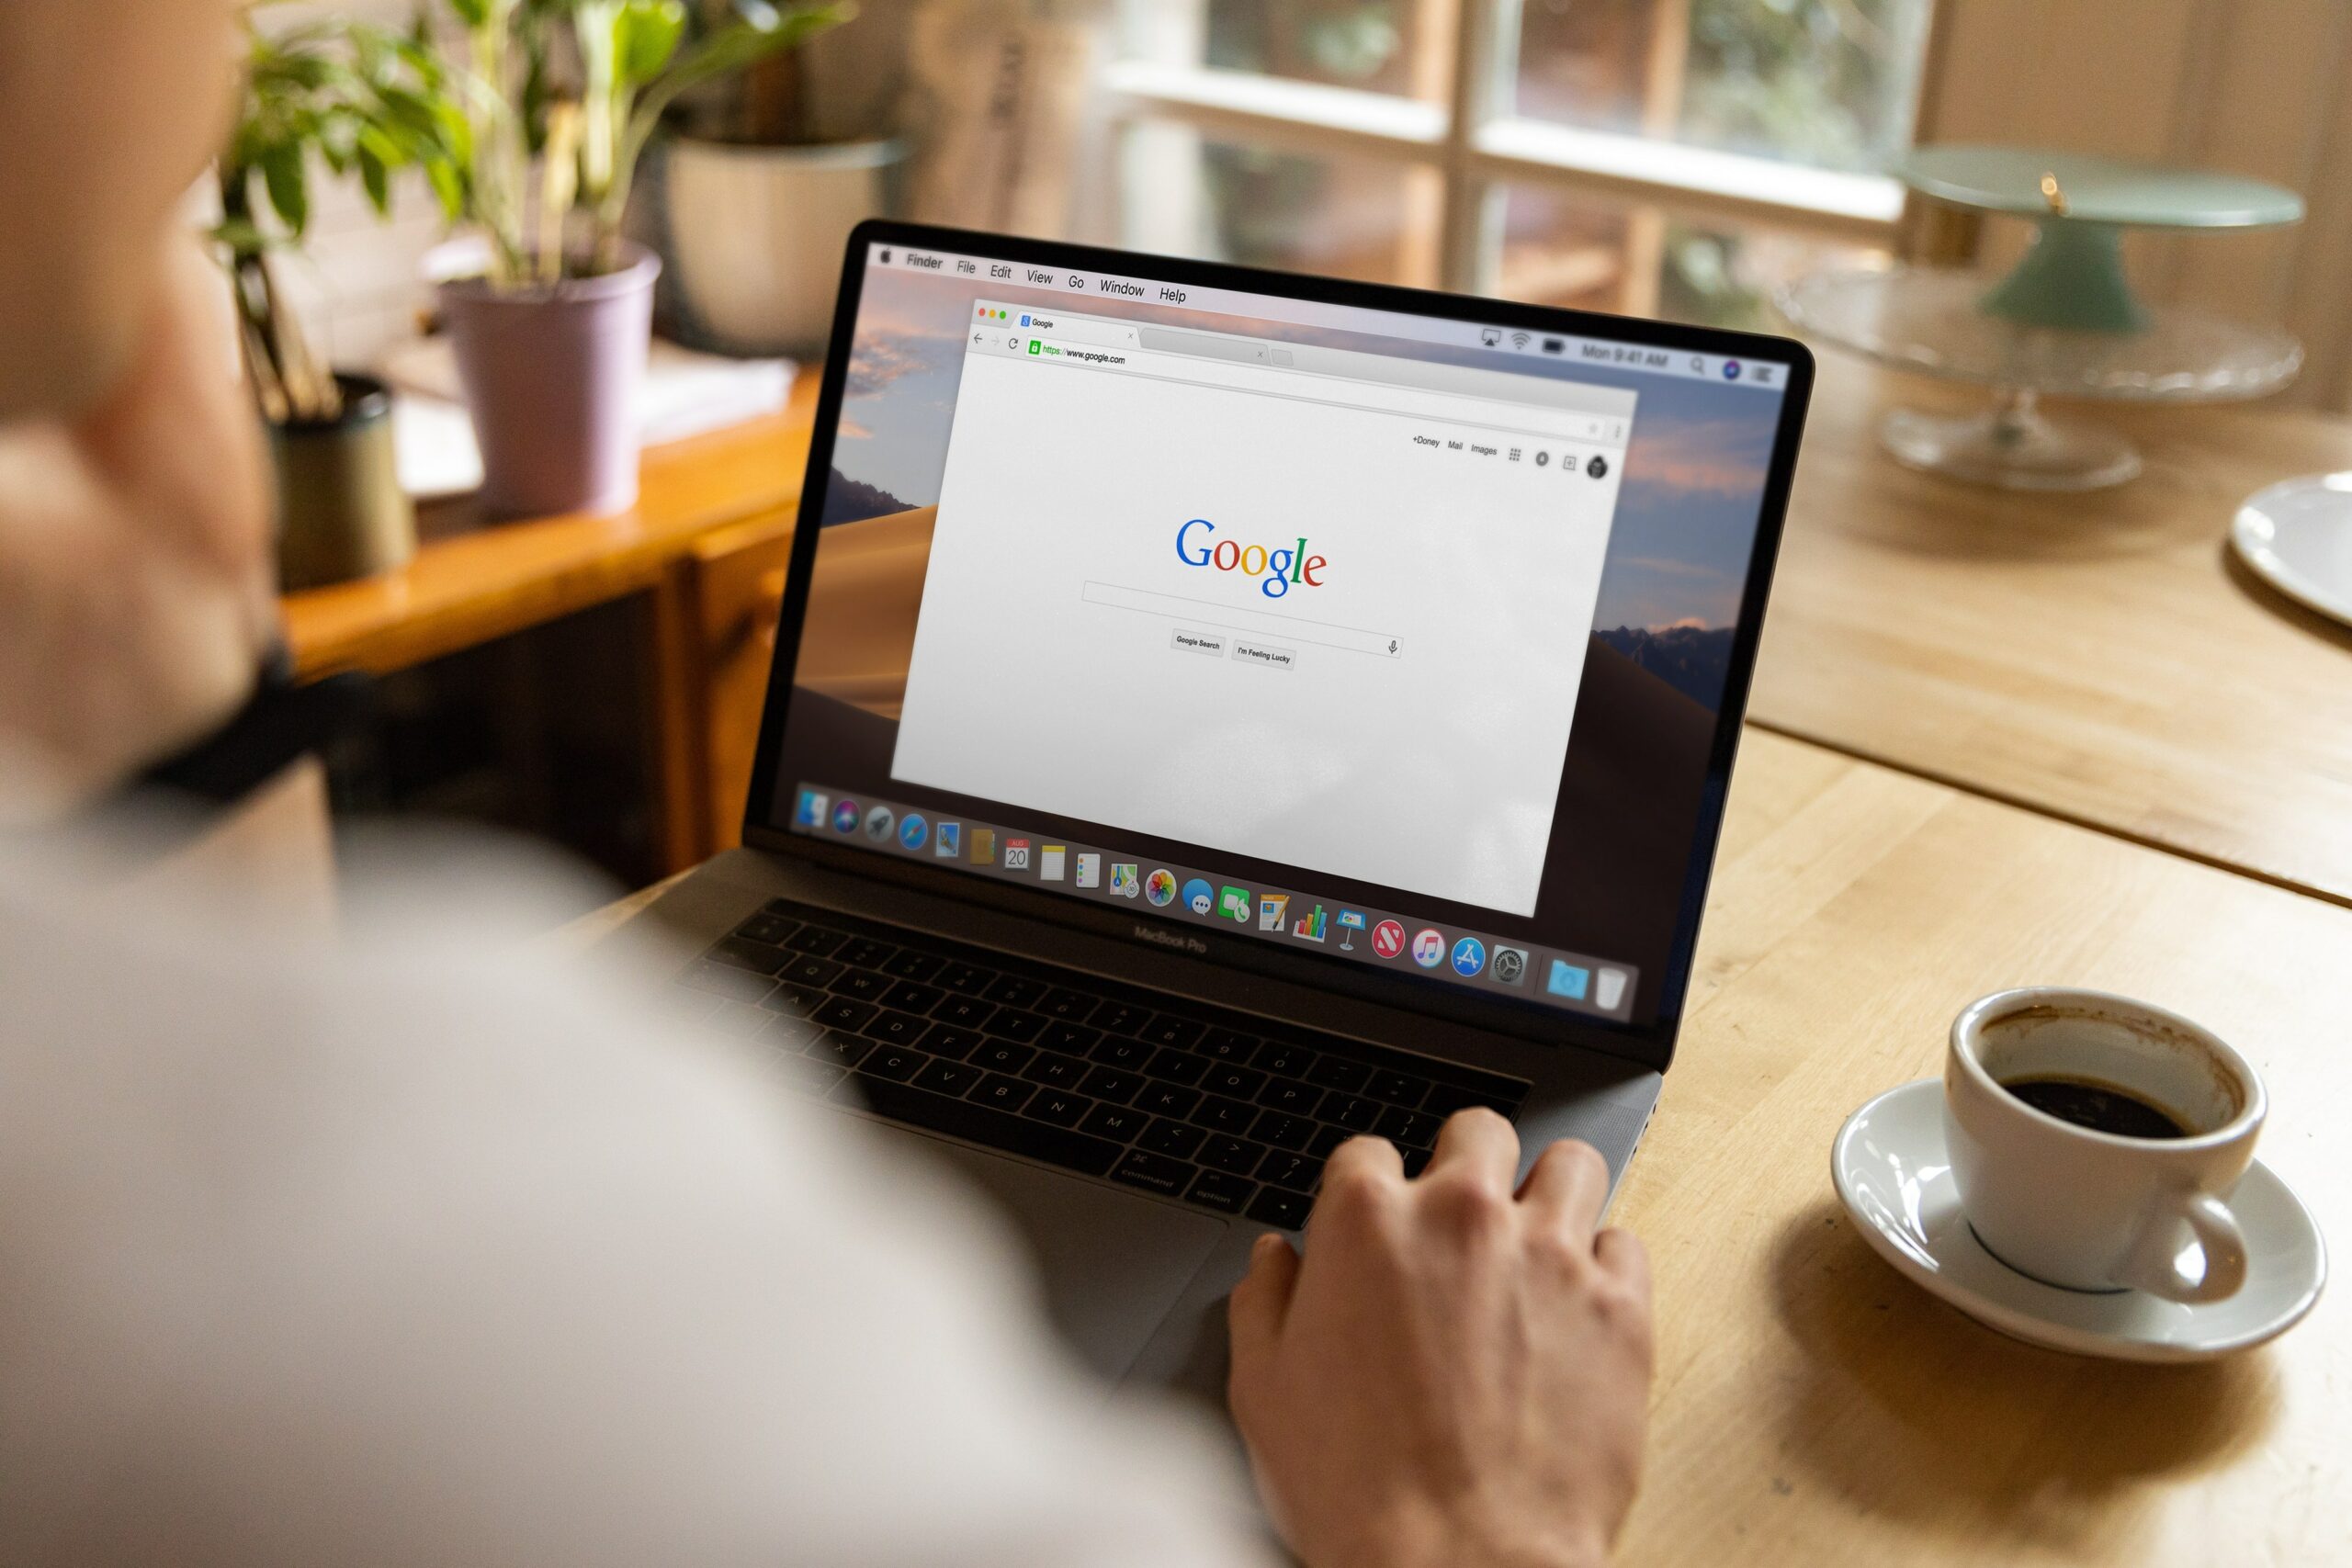 Bei Google suchen: Tipps und Tricks für bessere Ergebnisse